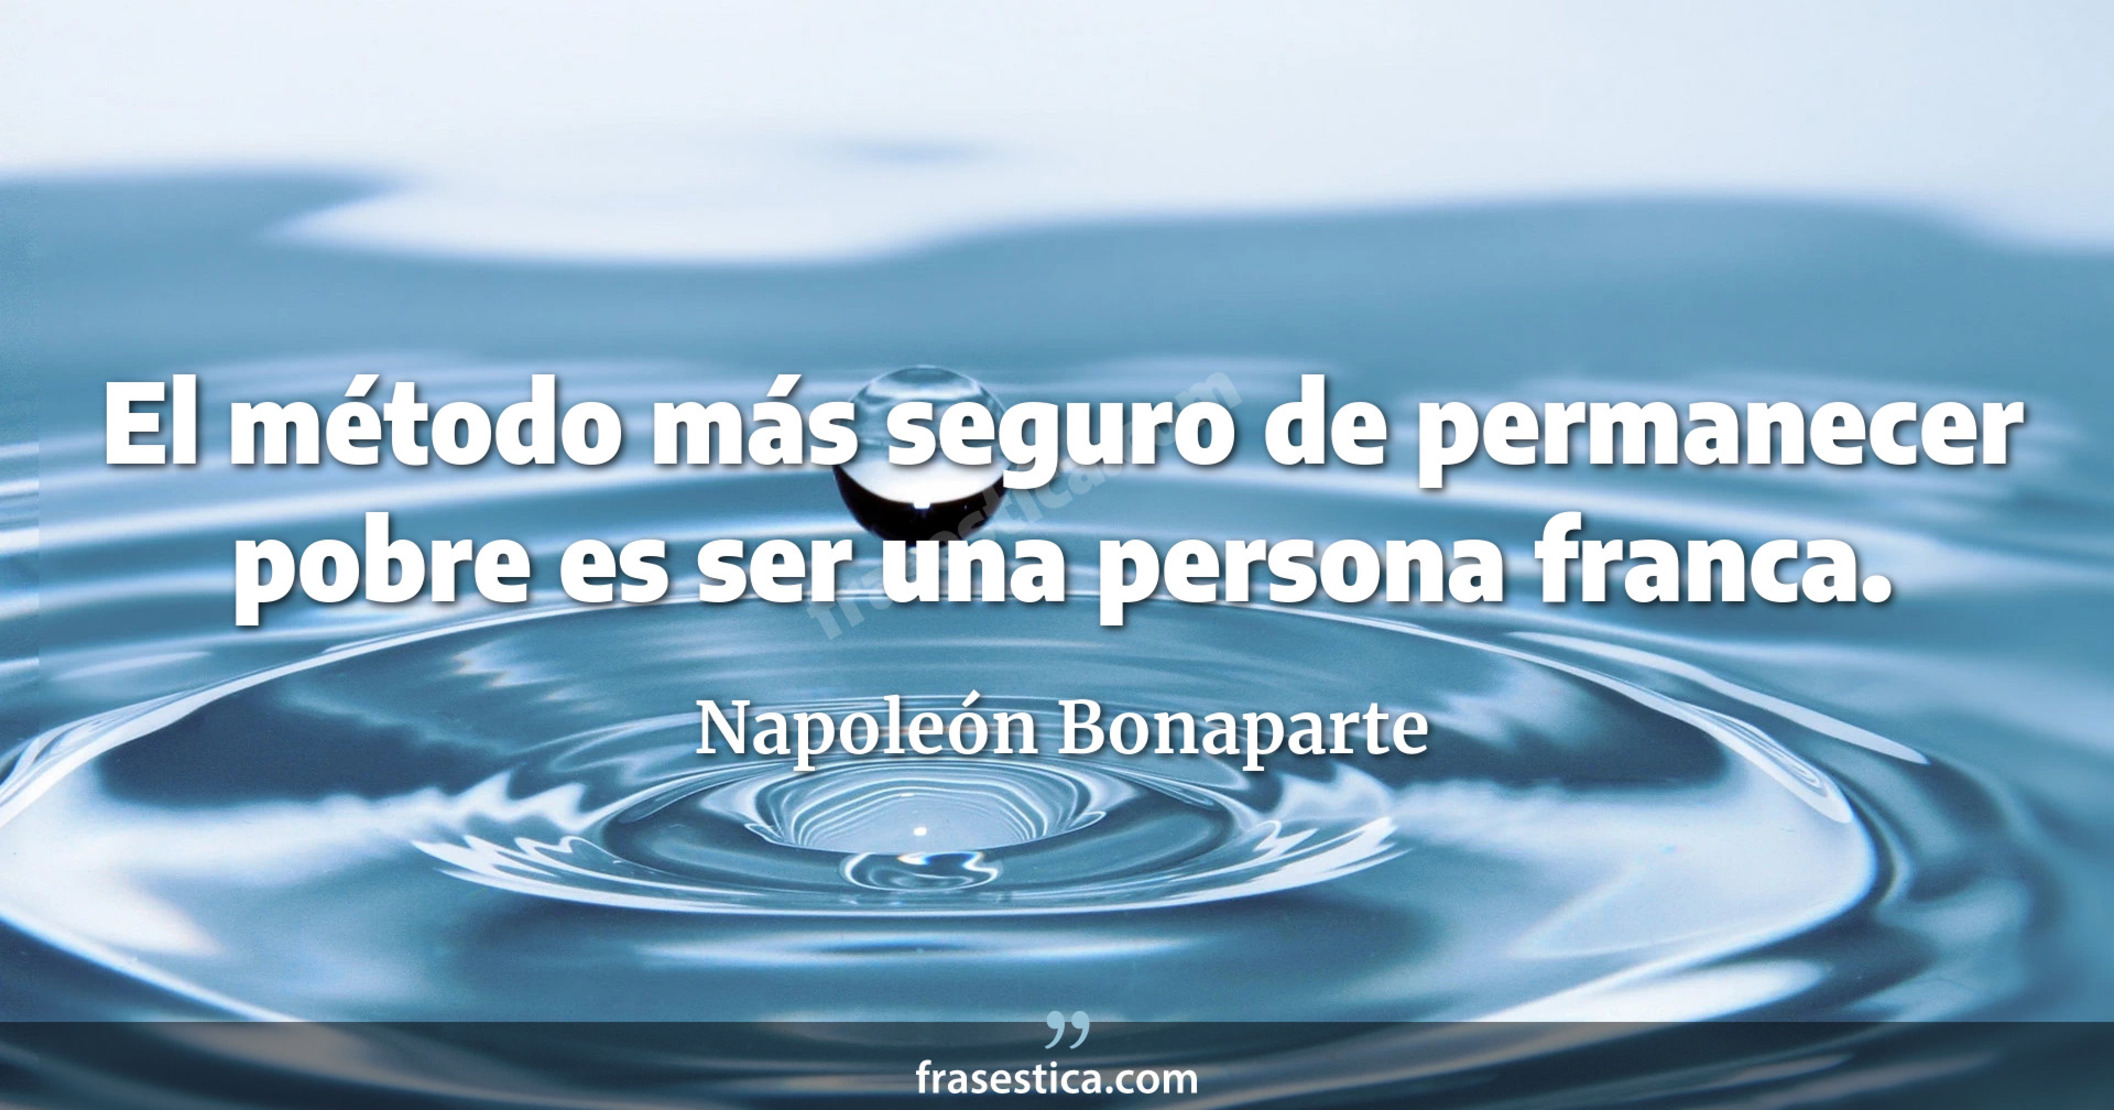 El método más seguro de permanecer pobre es ser una persona franca. - Napoleón Bonaparte